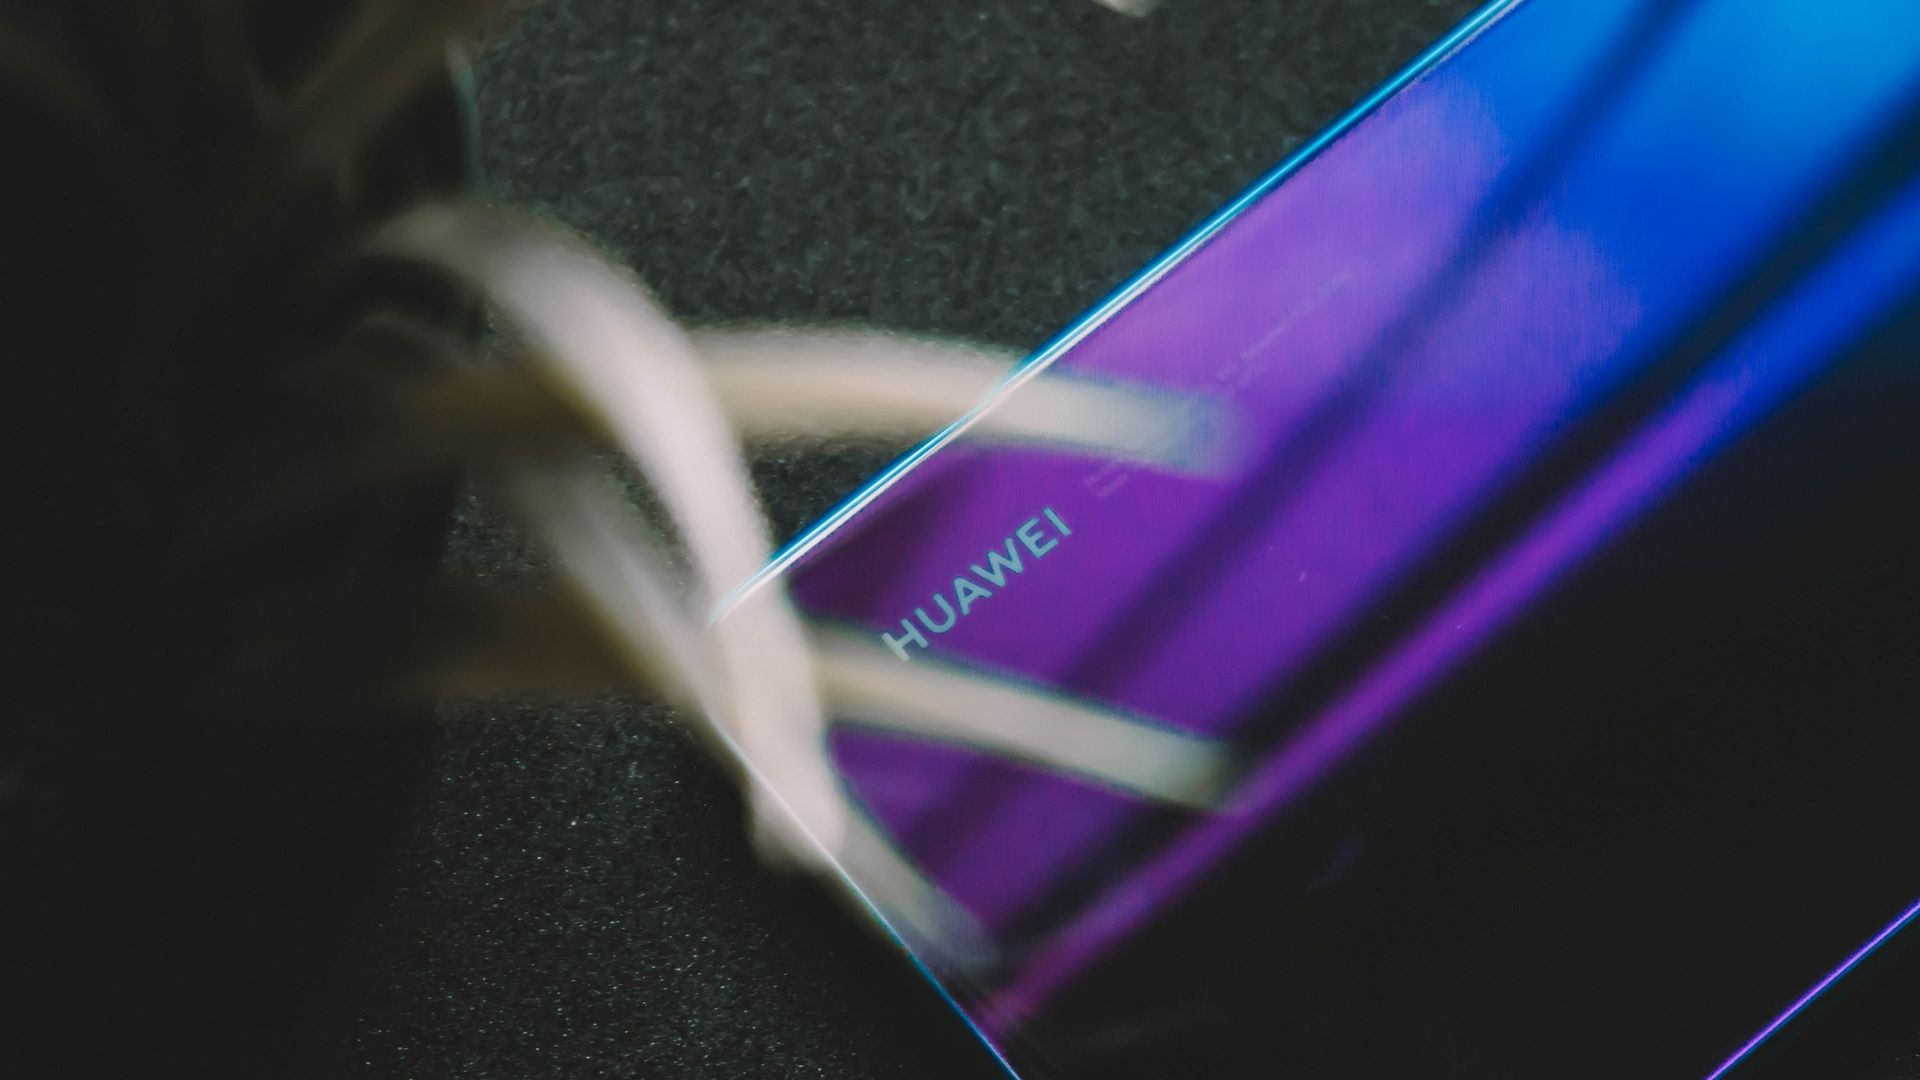 Le P40 de Huawei combinerait écran 120 Hz et une énorme batterie